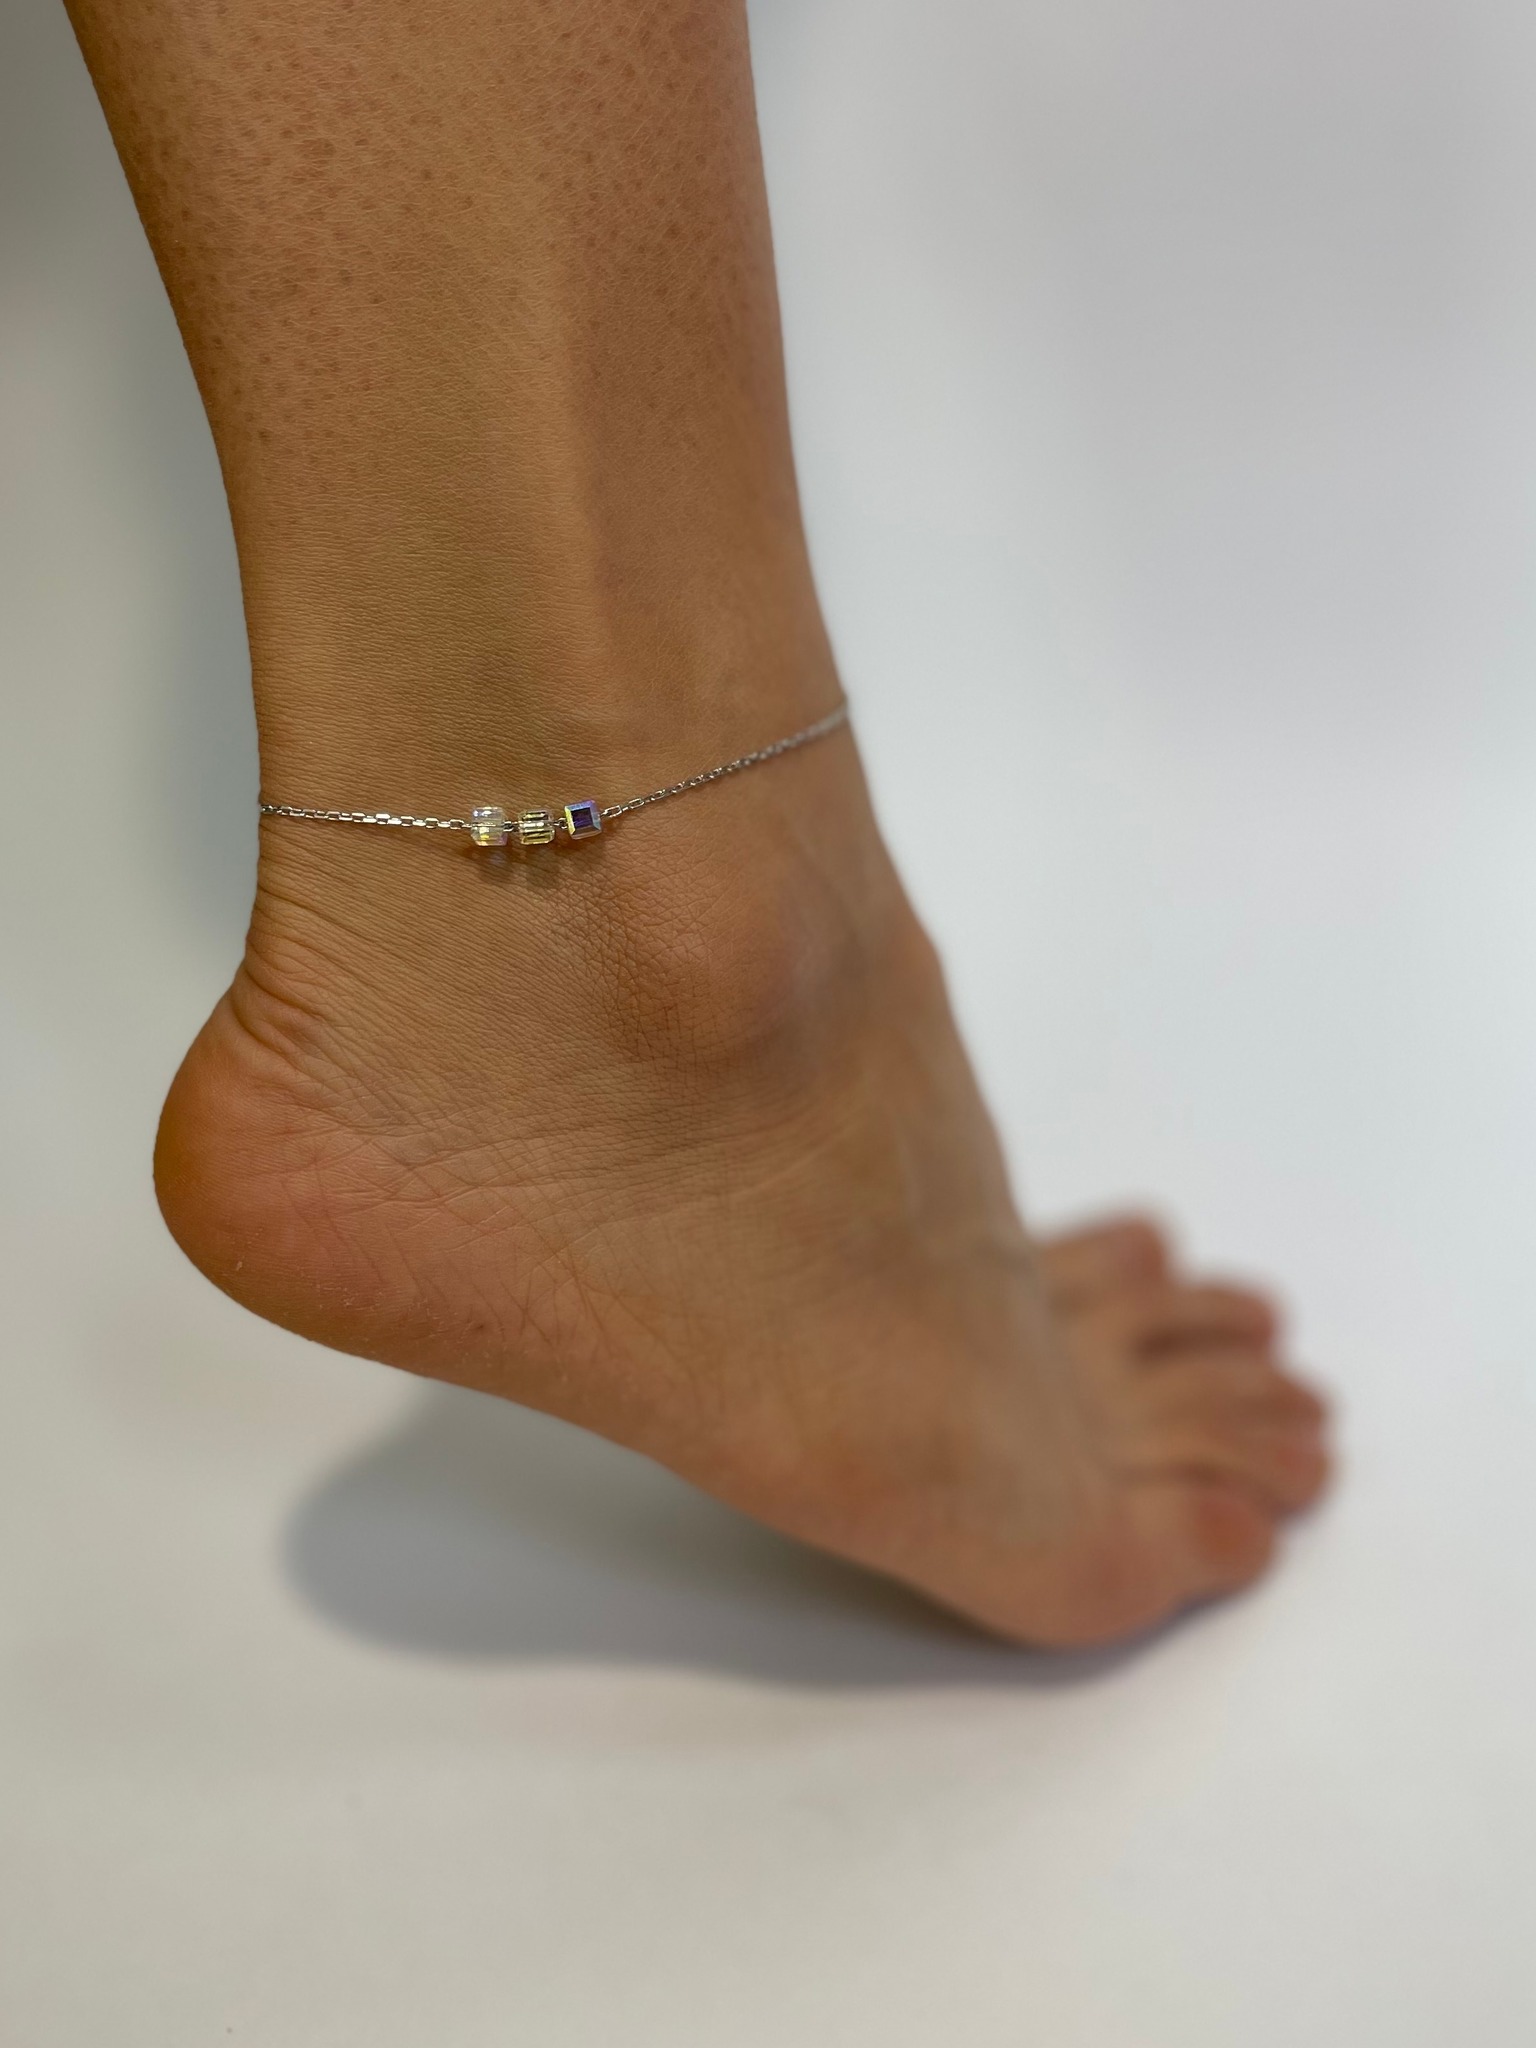 Серебряный браслет на ногу, анклет, с кристаллами Swarovski - артикул53621251 - купить в интернет-магазине ювелирной бижутерии Lattrice